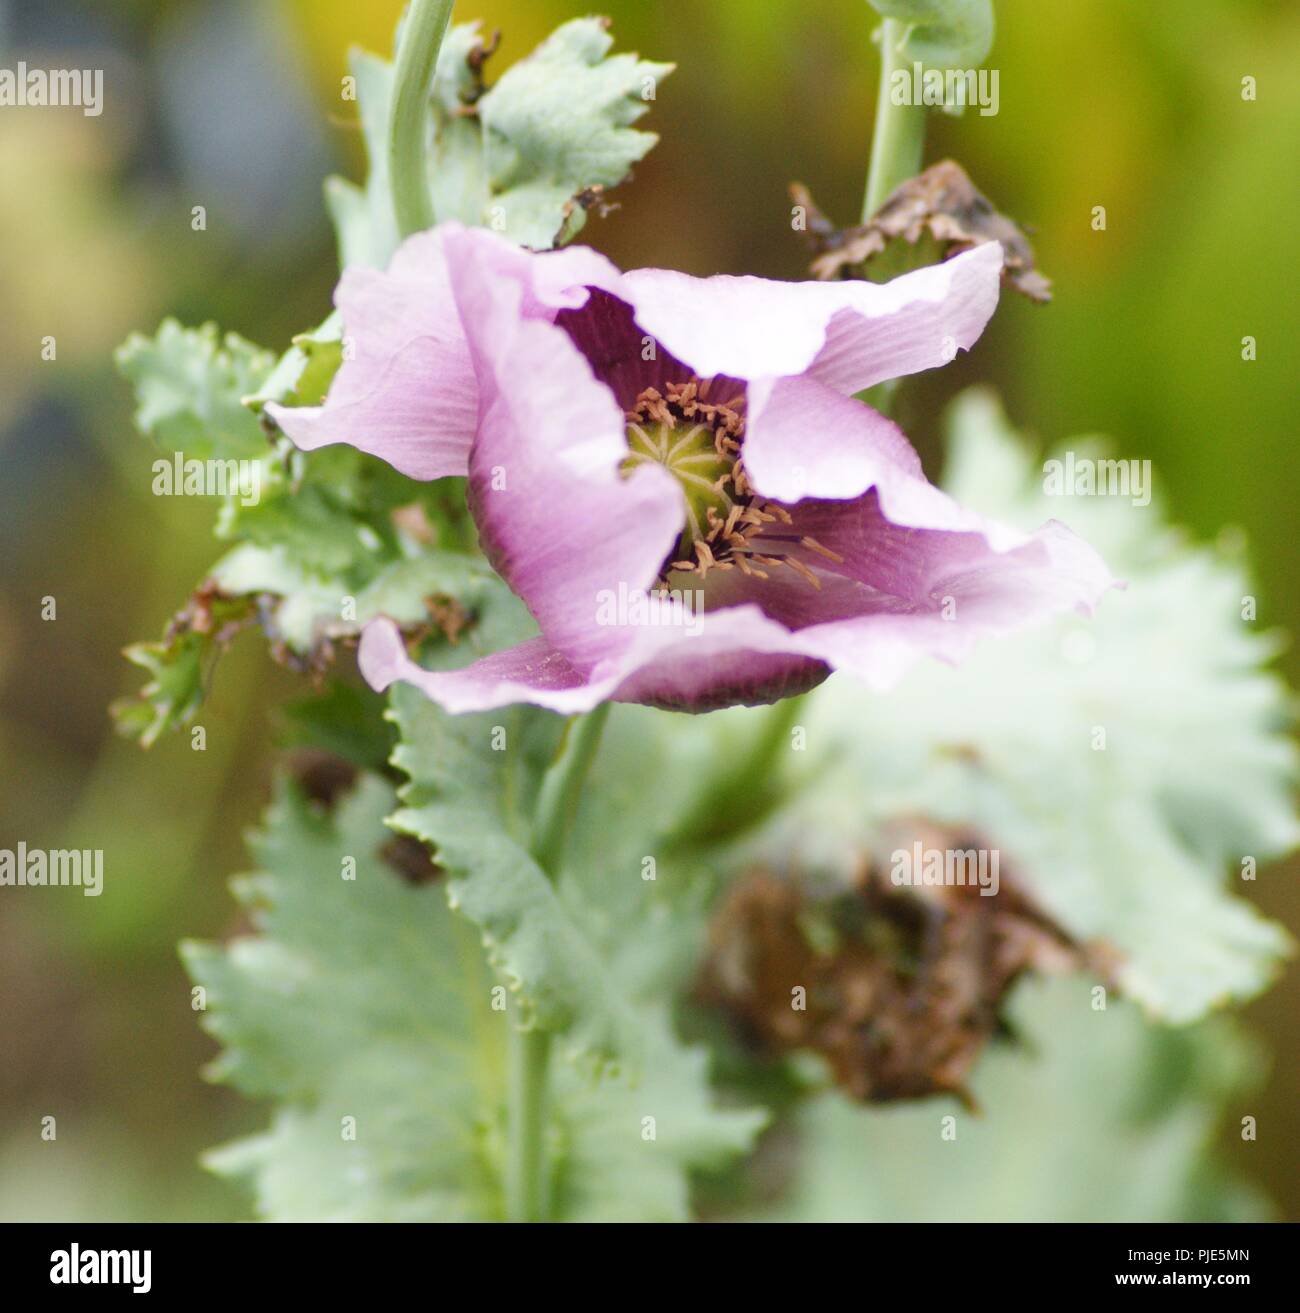 Gros Plan de fleur de pavot Rose et mauve Papaver somniferum papaveraeae, in der Nähe von Rosa Mohnblüte mauve Papaver somniferum papaveraeae, Stockfoto